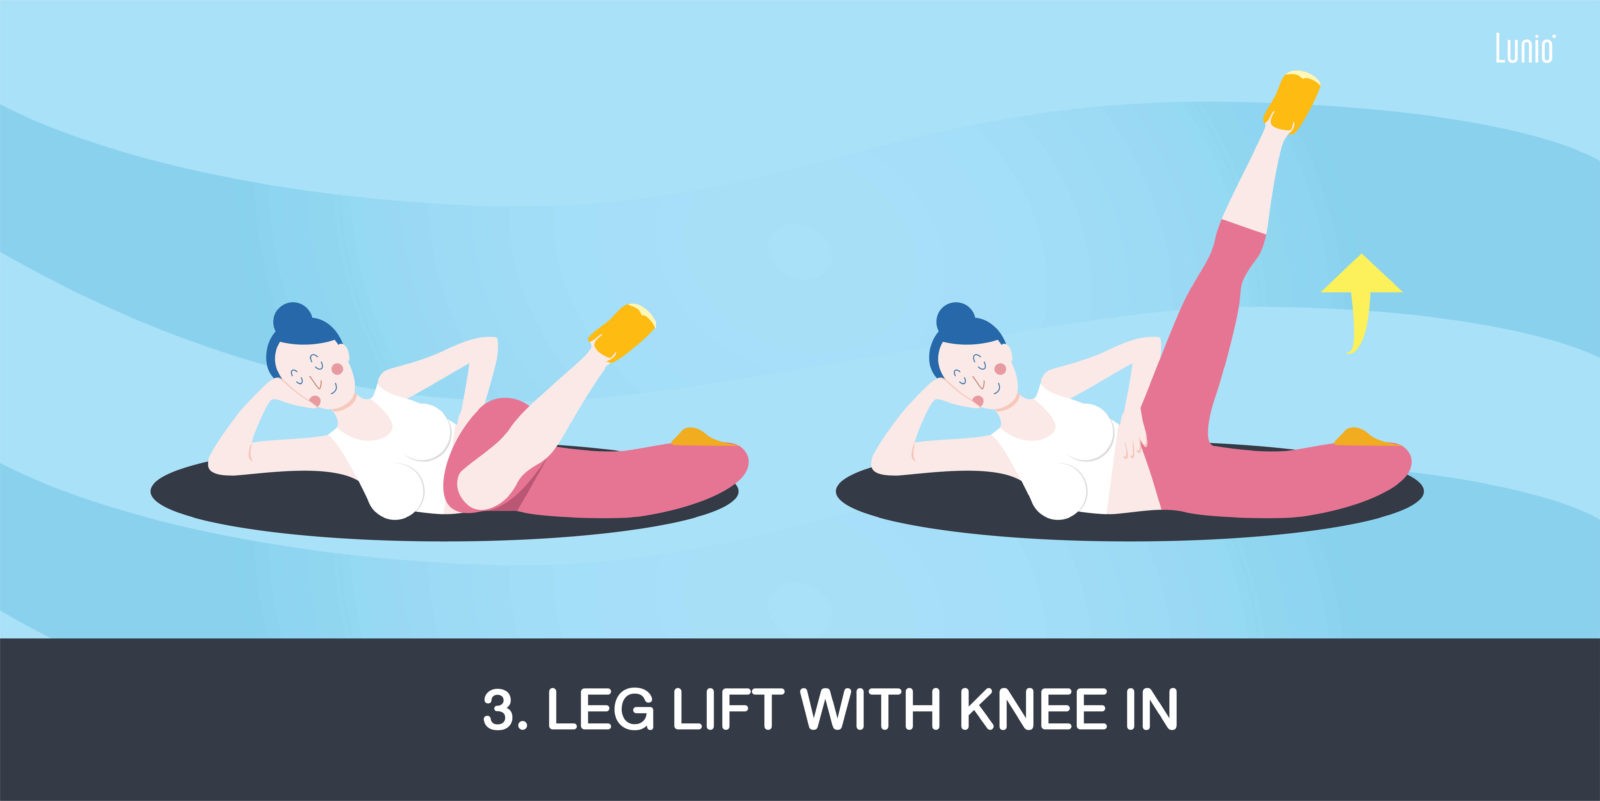 ออกกำลังกายบนที่นอน ท่าออกกำลังกาย Leg Lift With Knee In